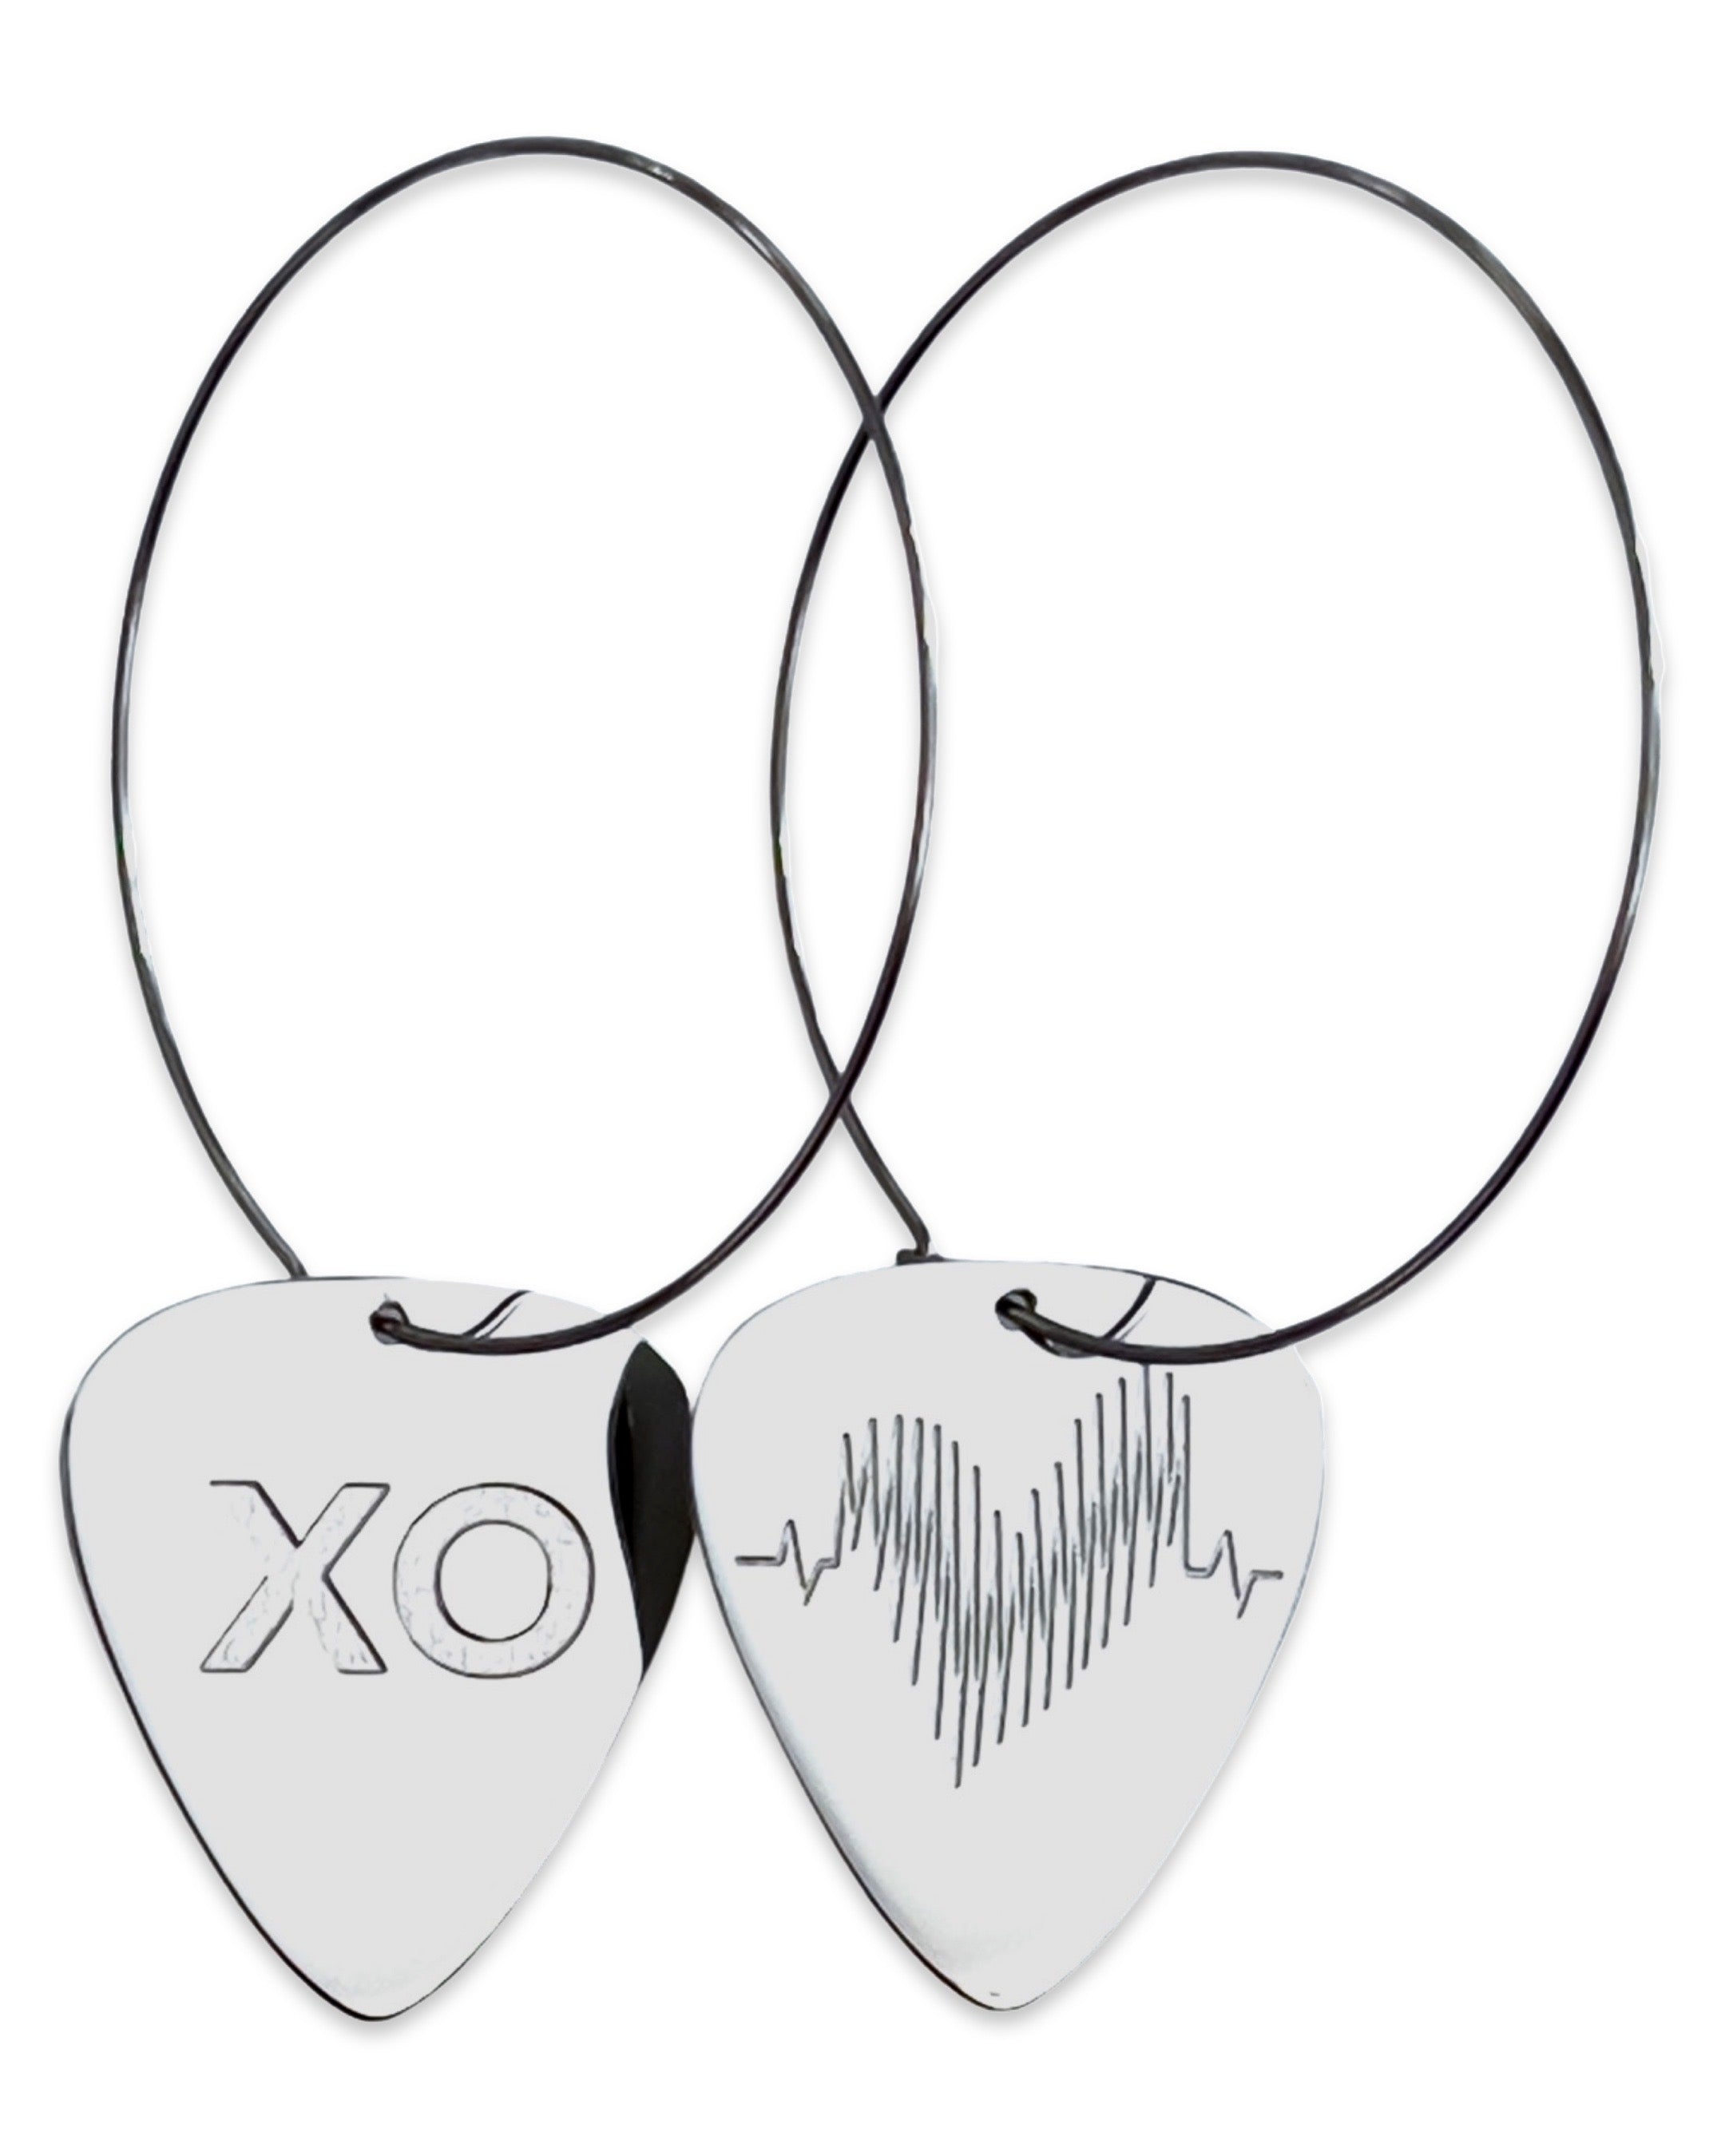 WS XO Steel Reversible Single Guitar Pick Earrings